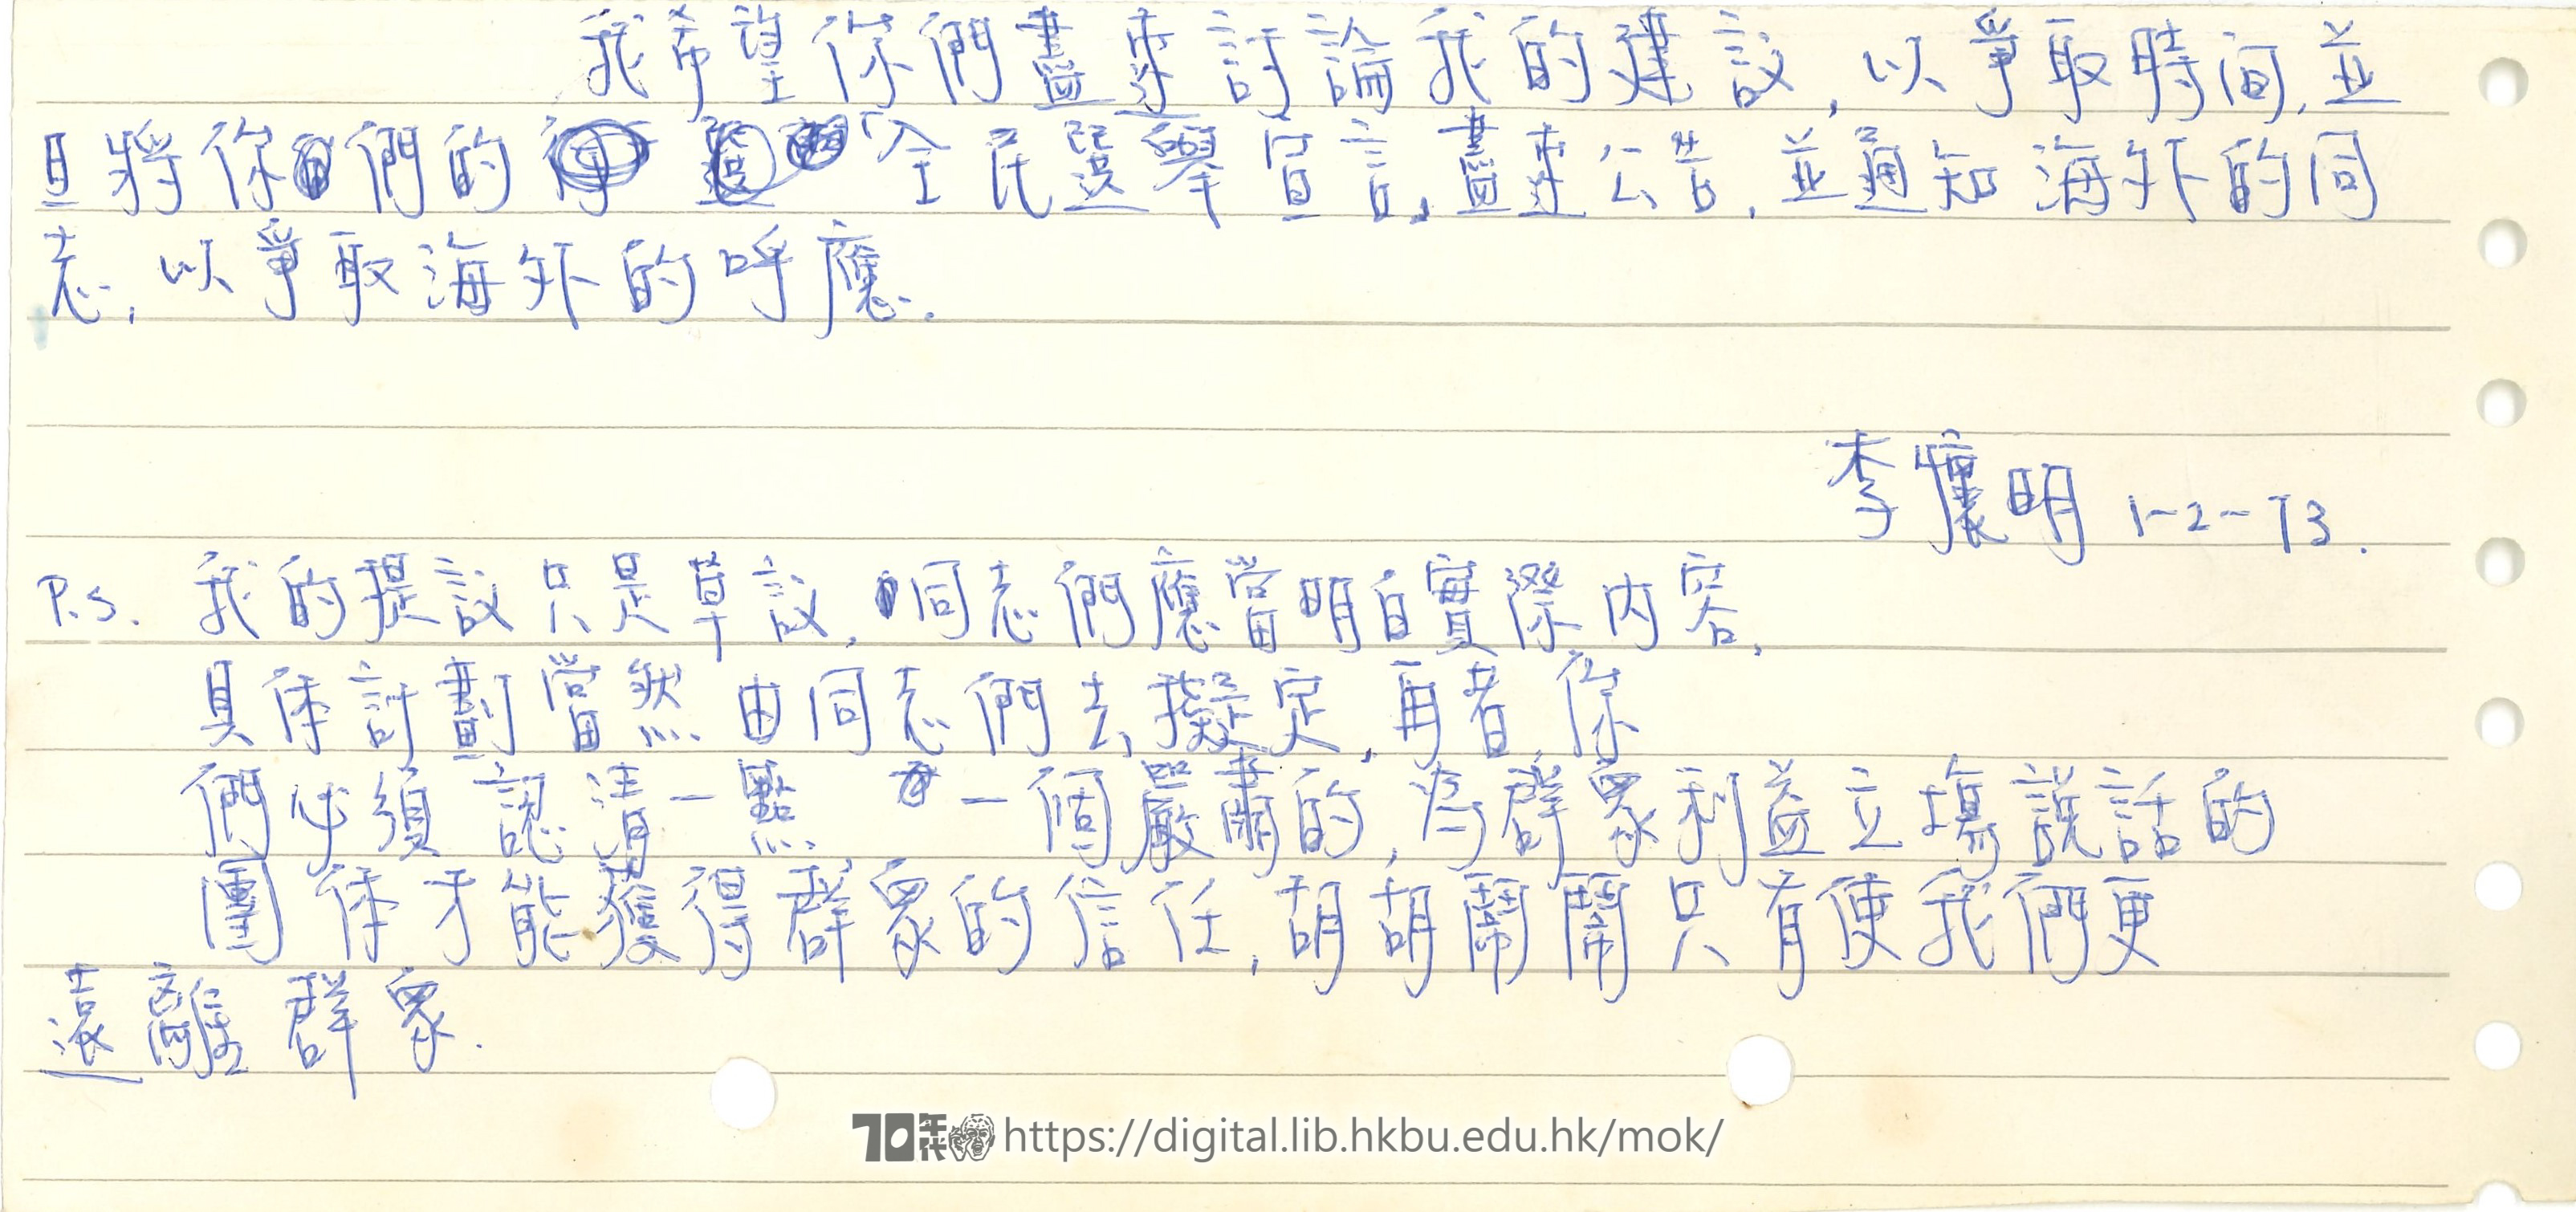   Letter from Lee Wai-ming 李懷明 